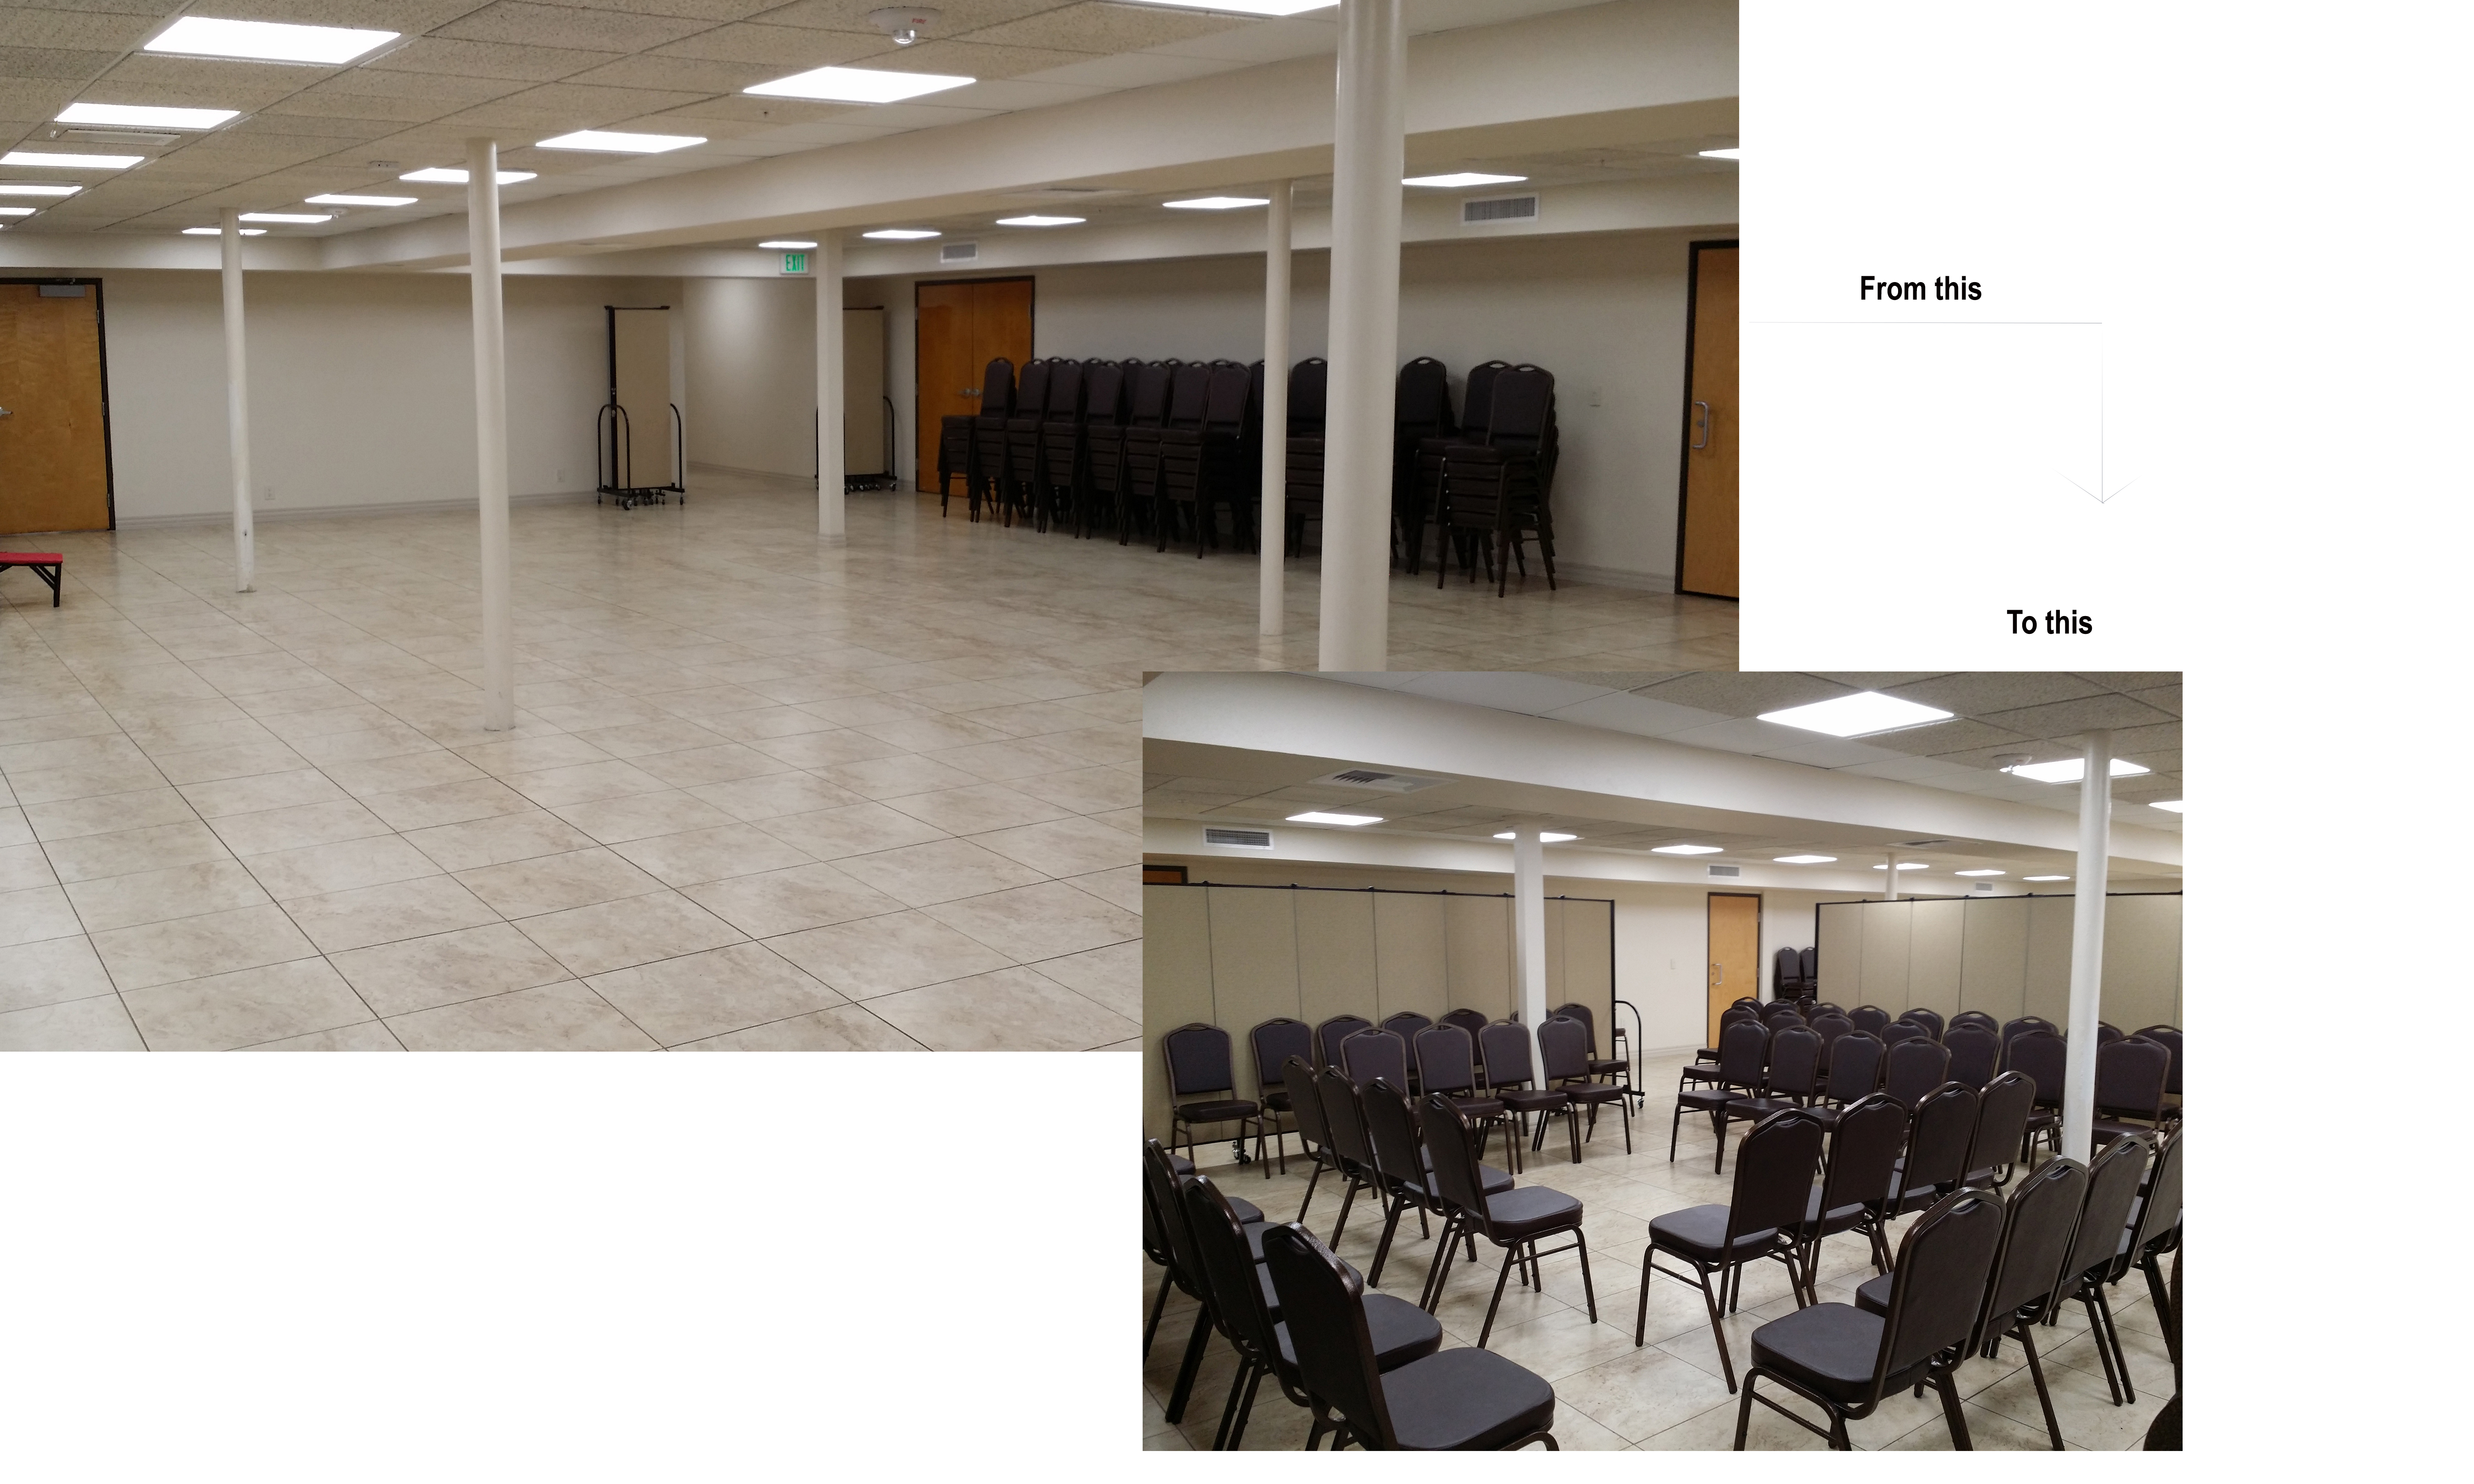 Church dividers convert a church basement into multiple classrooms